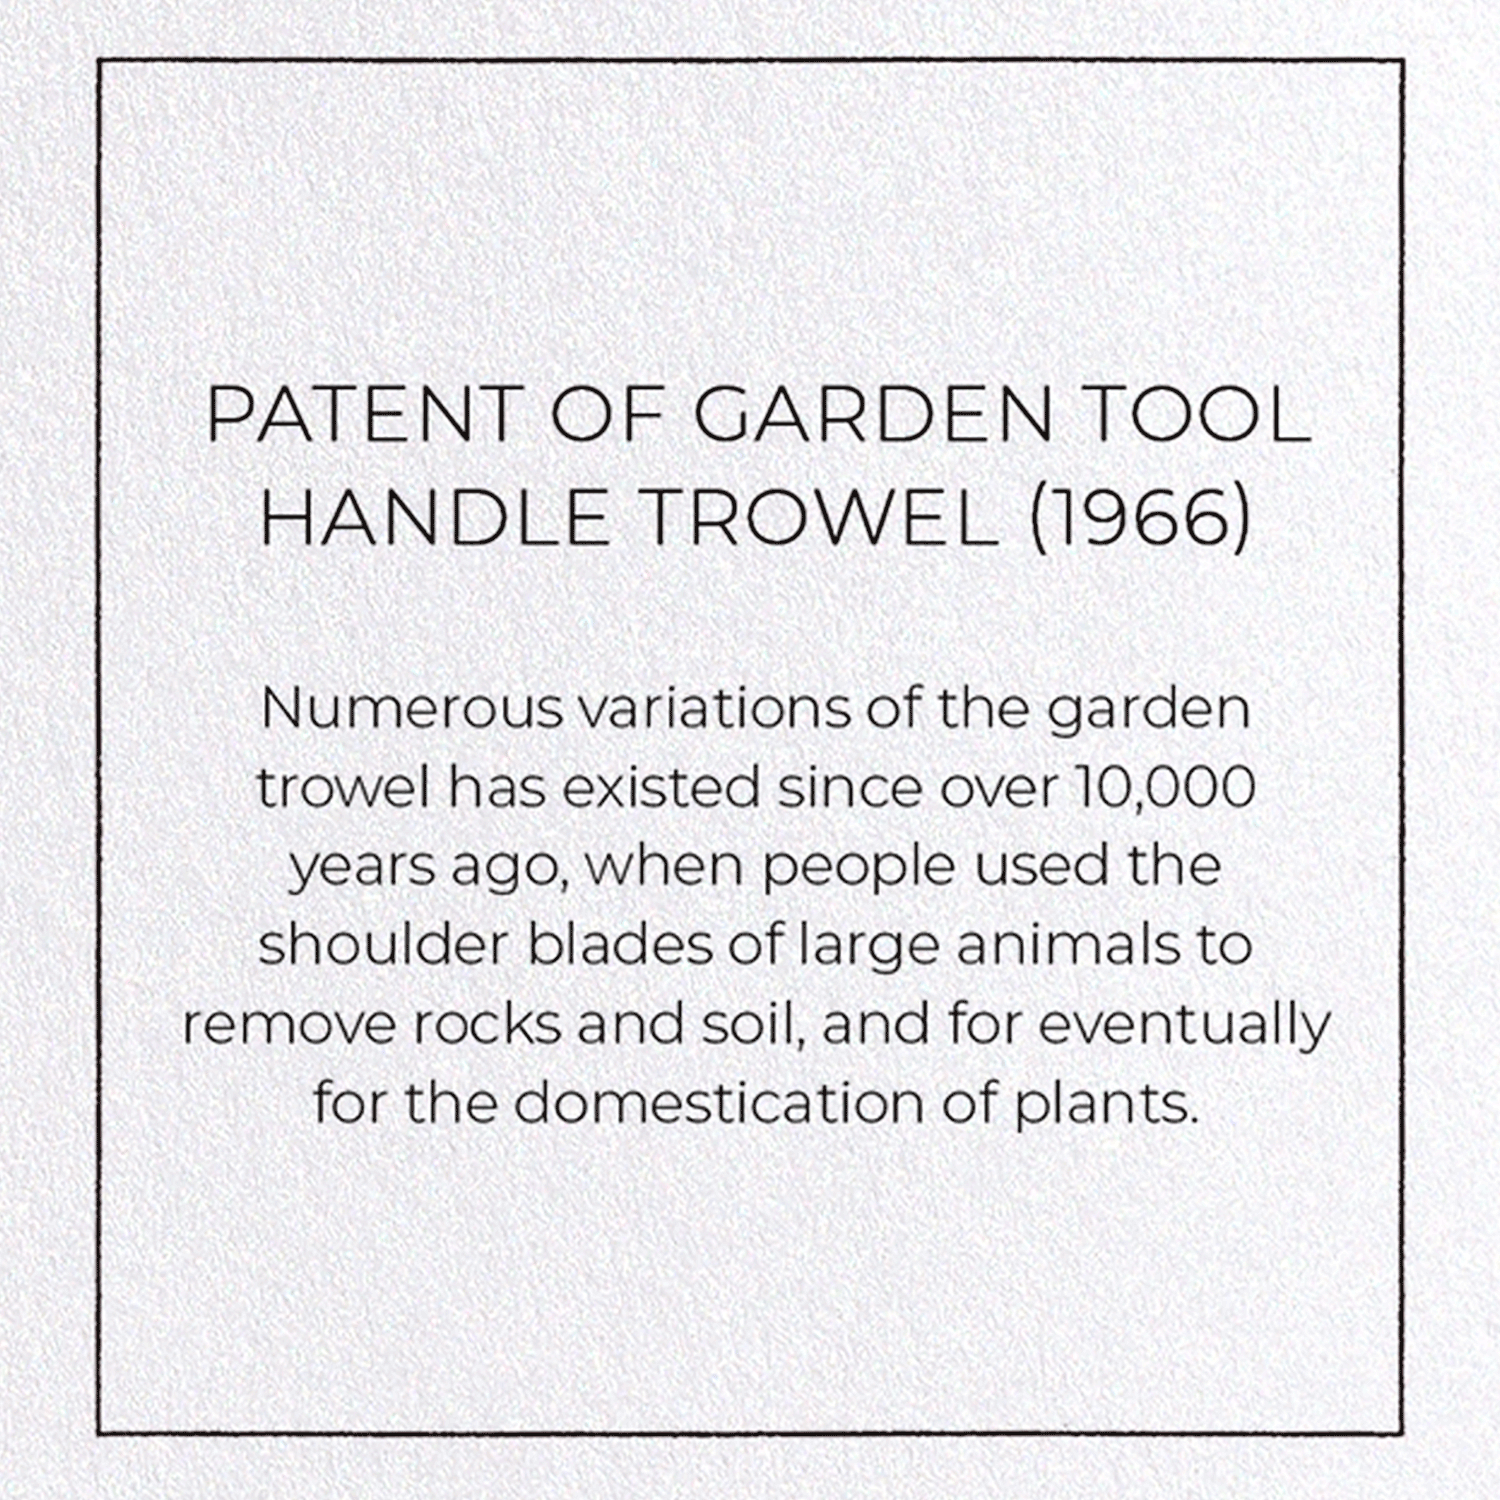 PATENT OF GARDEN TOOL HANDLE TROWEL (1966)